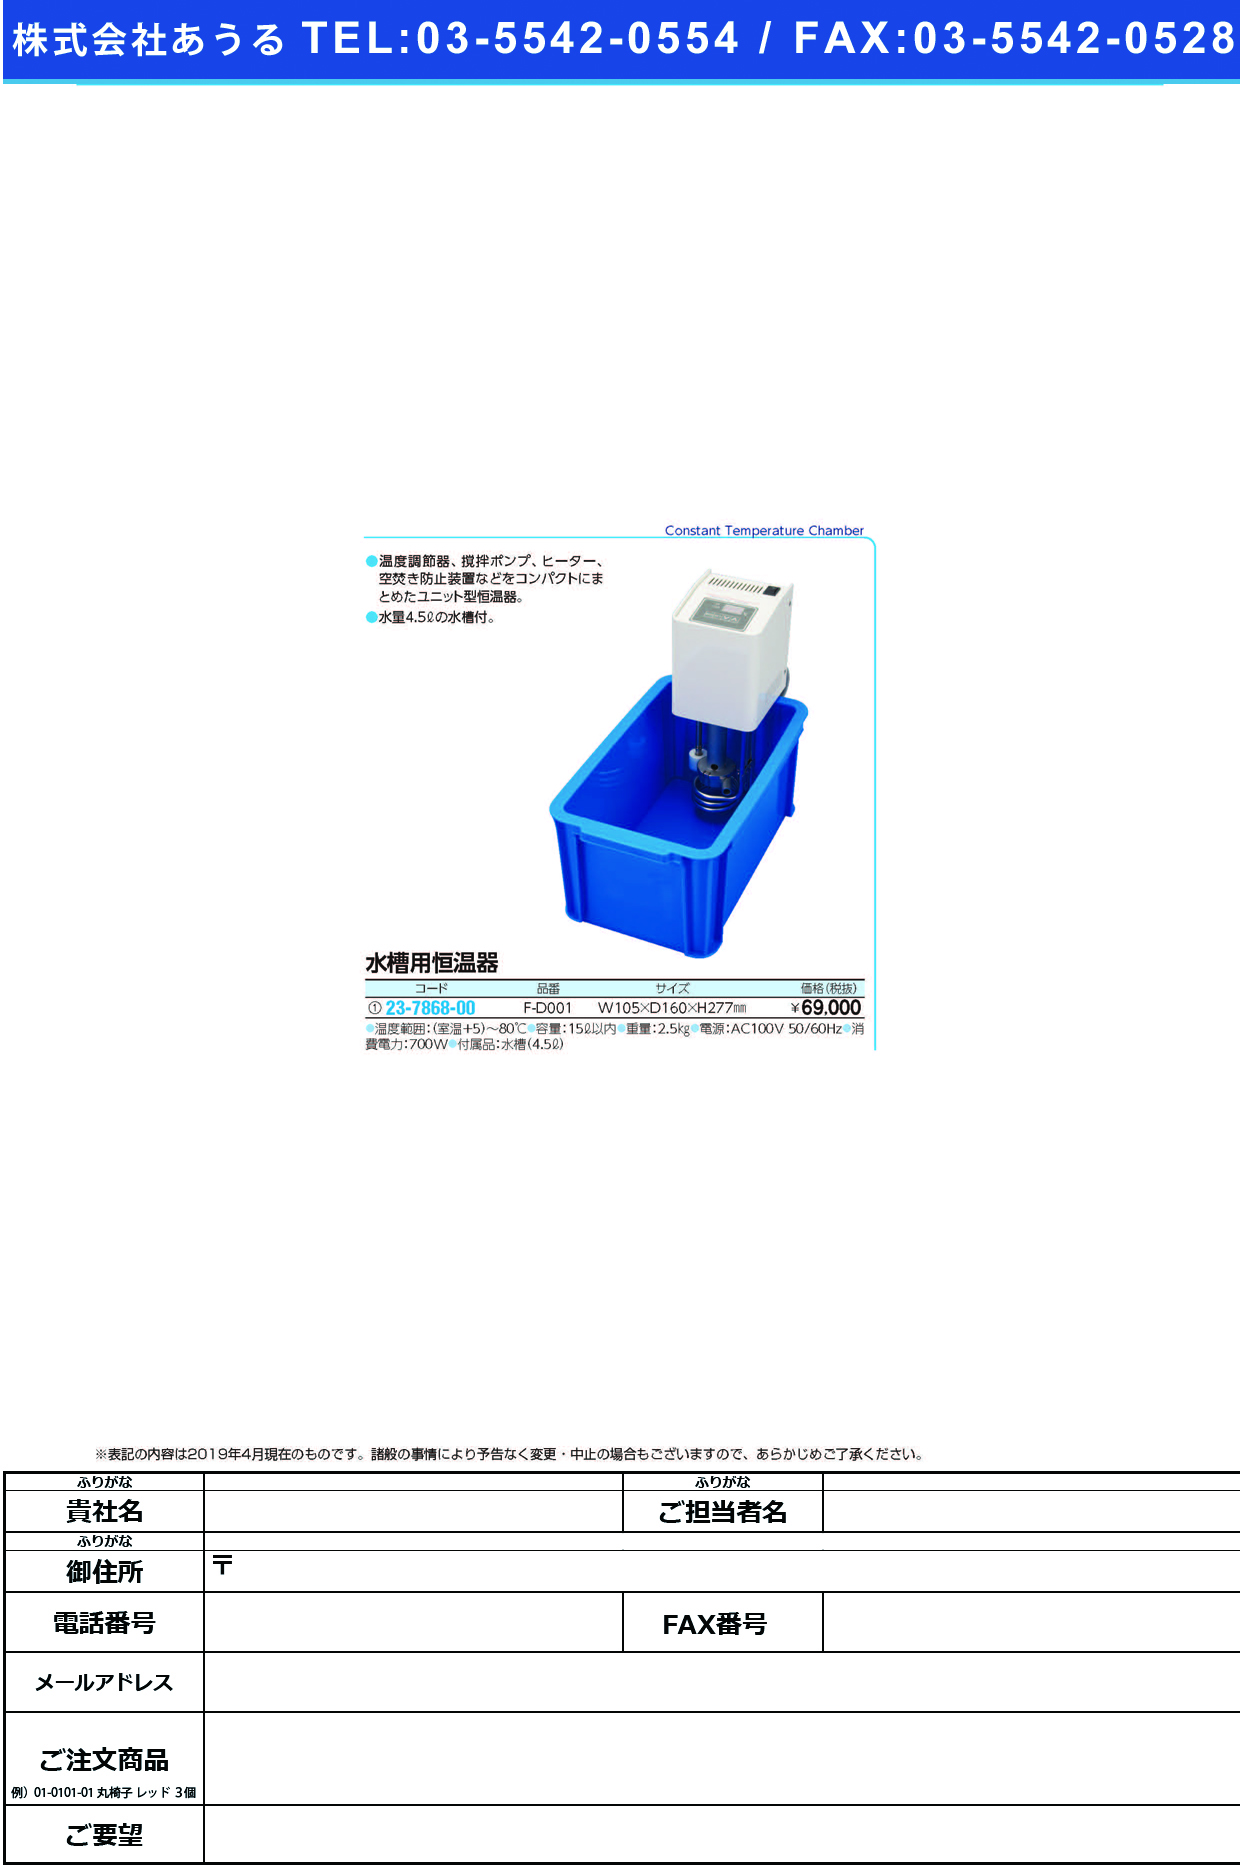 (23-7868-00)水槽用恒温器 F-D001 ｽｲｿｳﾖｳｺｳｵﾝｷ【1台単位】【2019年カタログ商品】